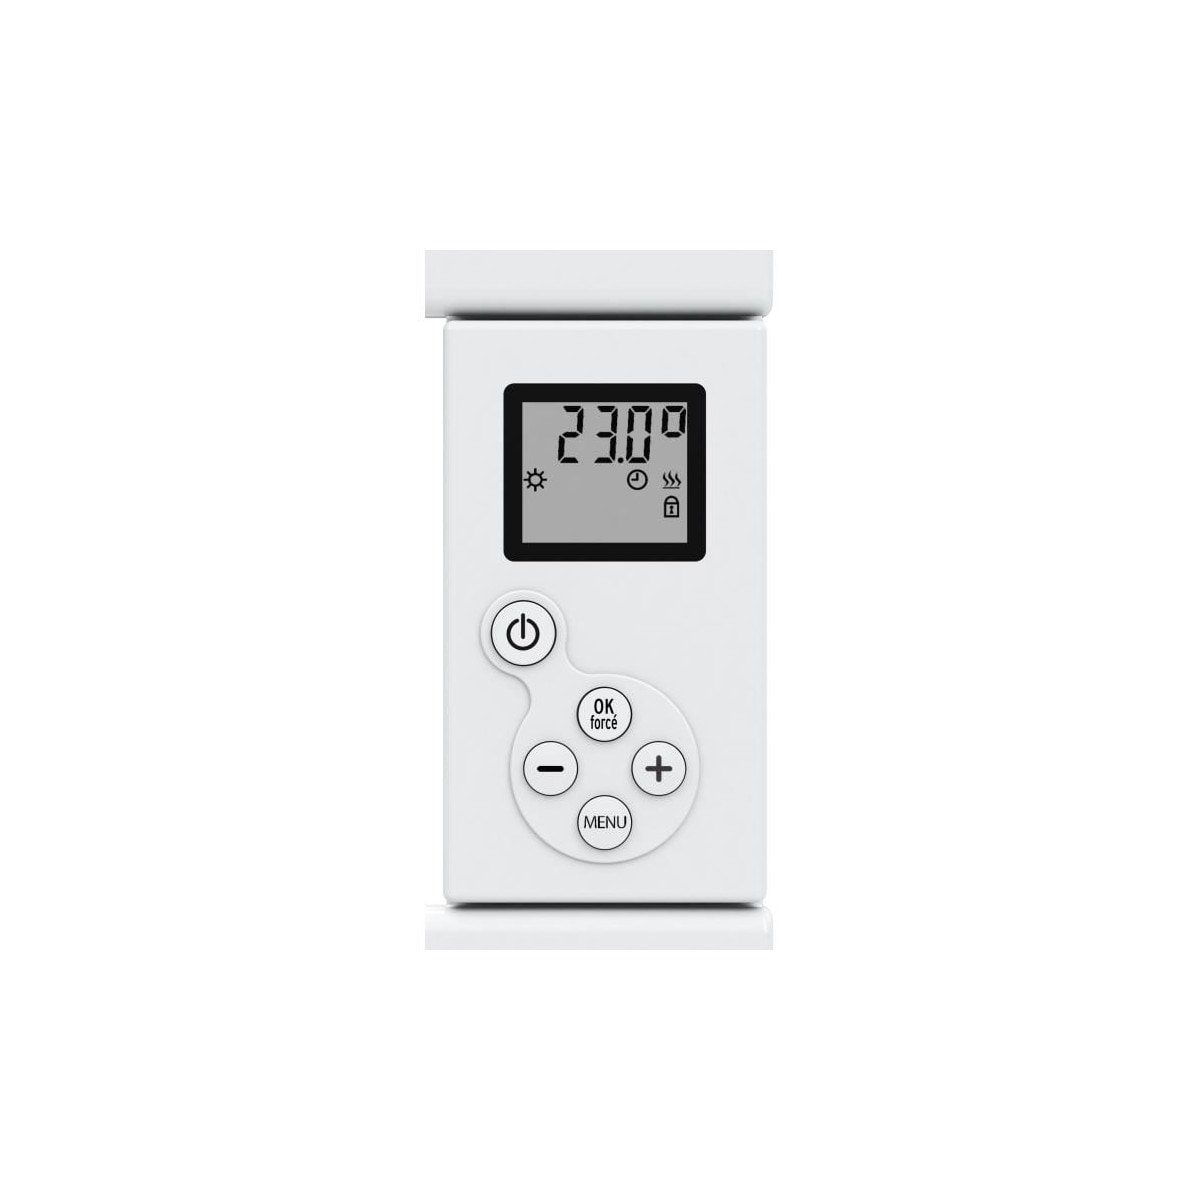 Sèche-serviette Straight inertie sèche avec thermostat électronique 500 W  DREXON, 1155723, Chauffage Climatisation et VMC